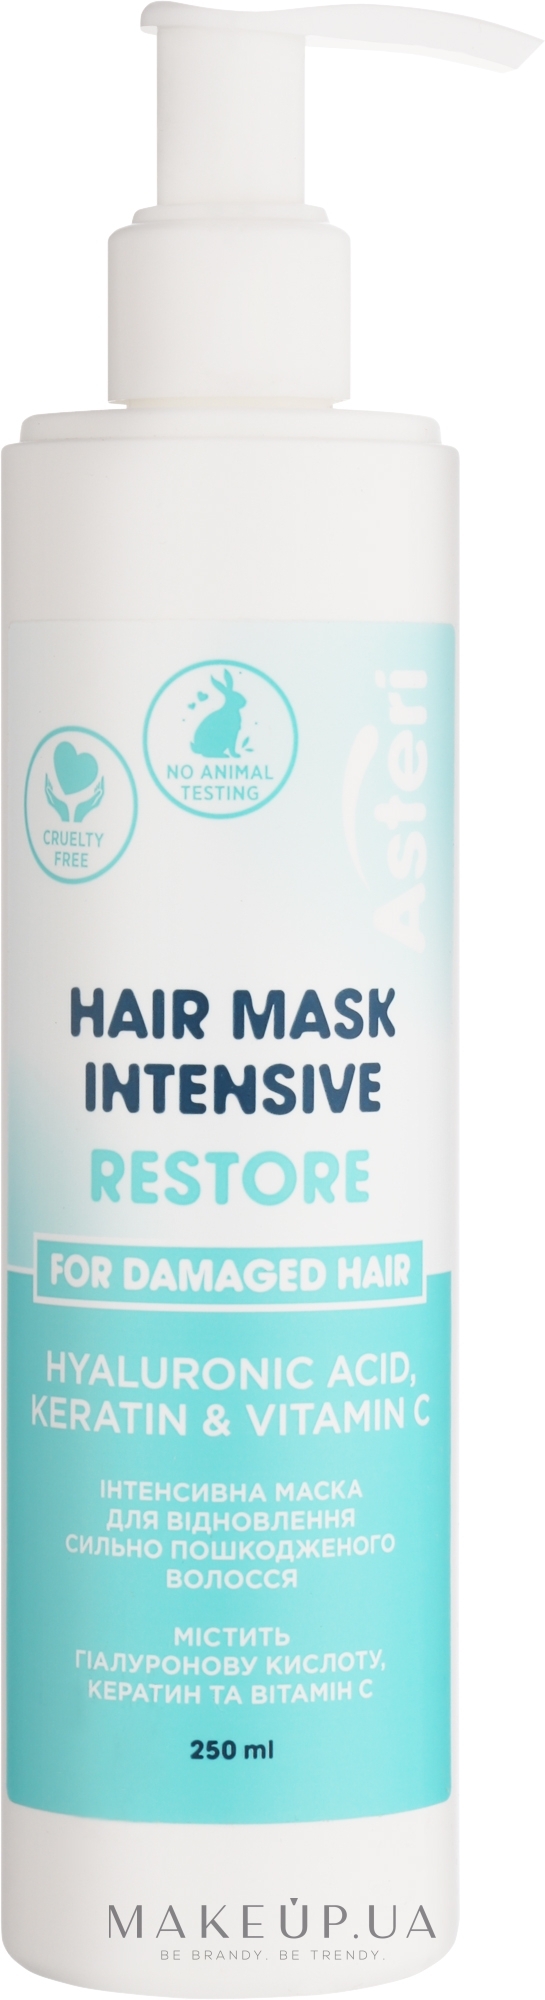 Інтенсивна маска для відновлення сильно пошкодженого волосся - Asteri Restore Intensive Hair Mask — фото 250ml